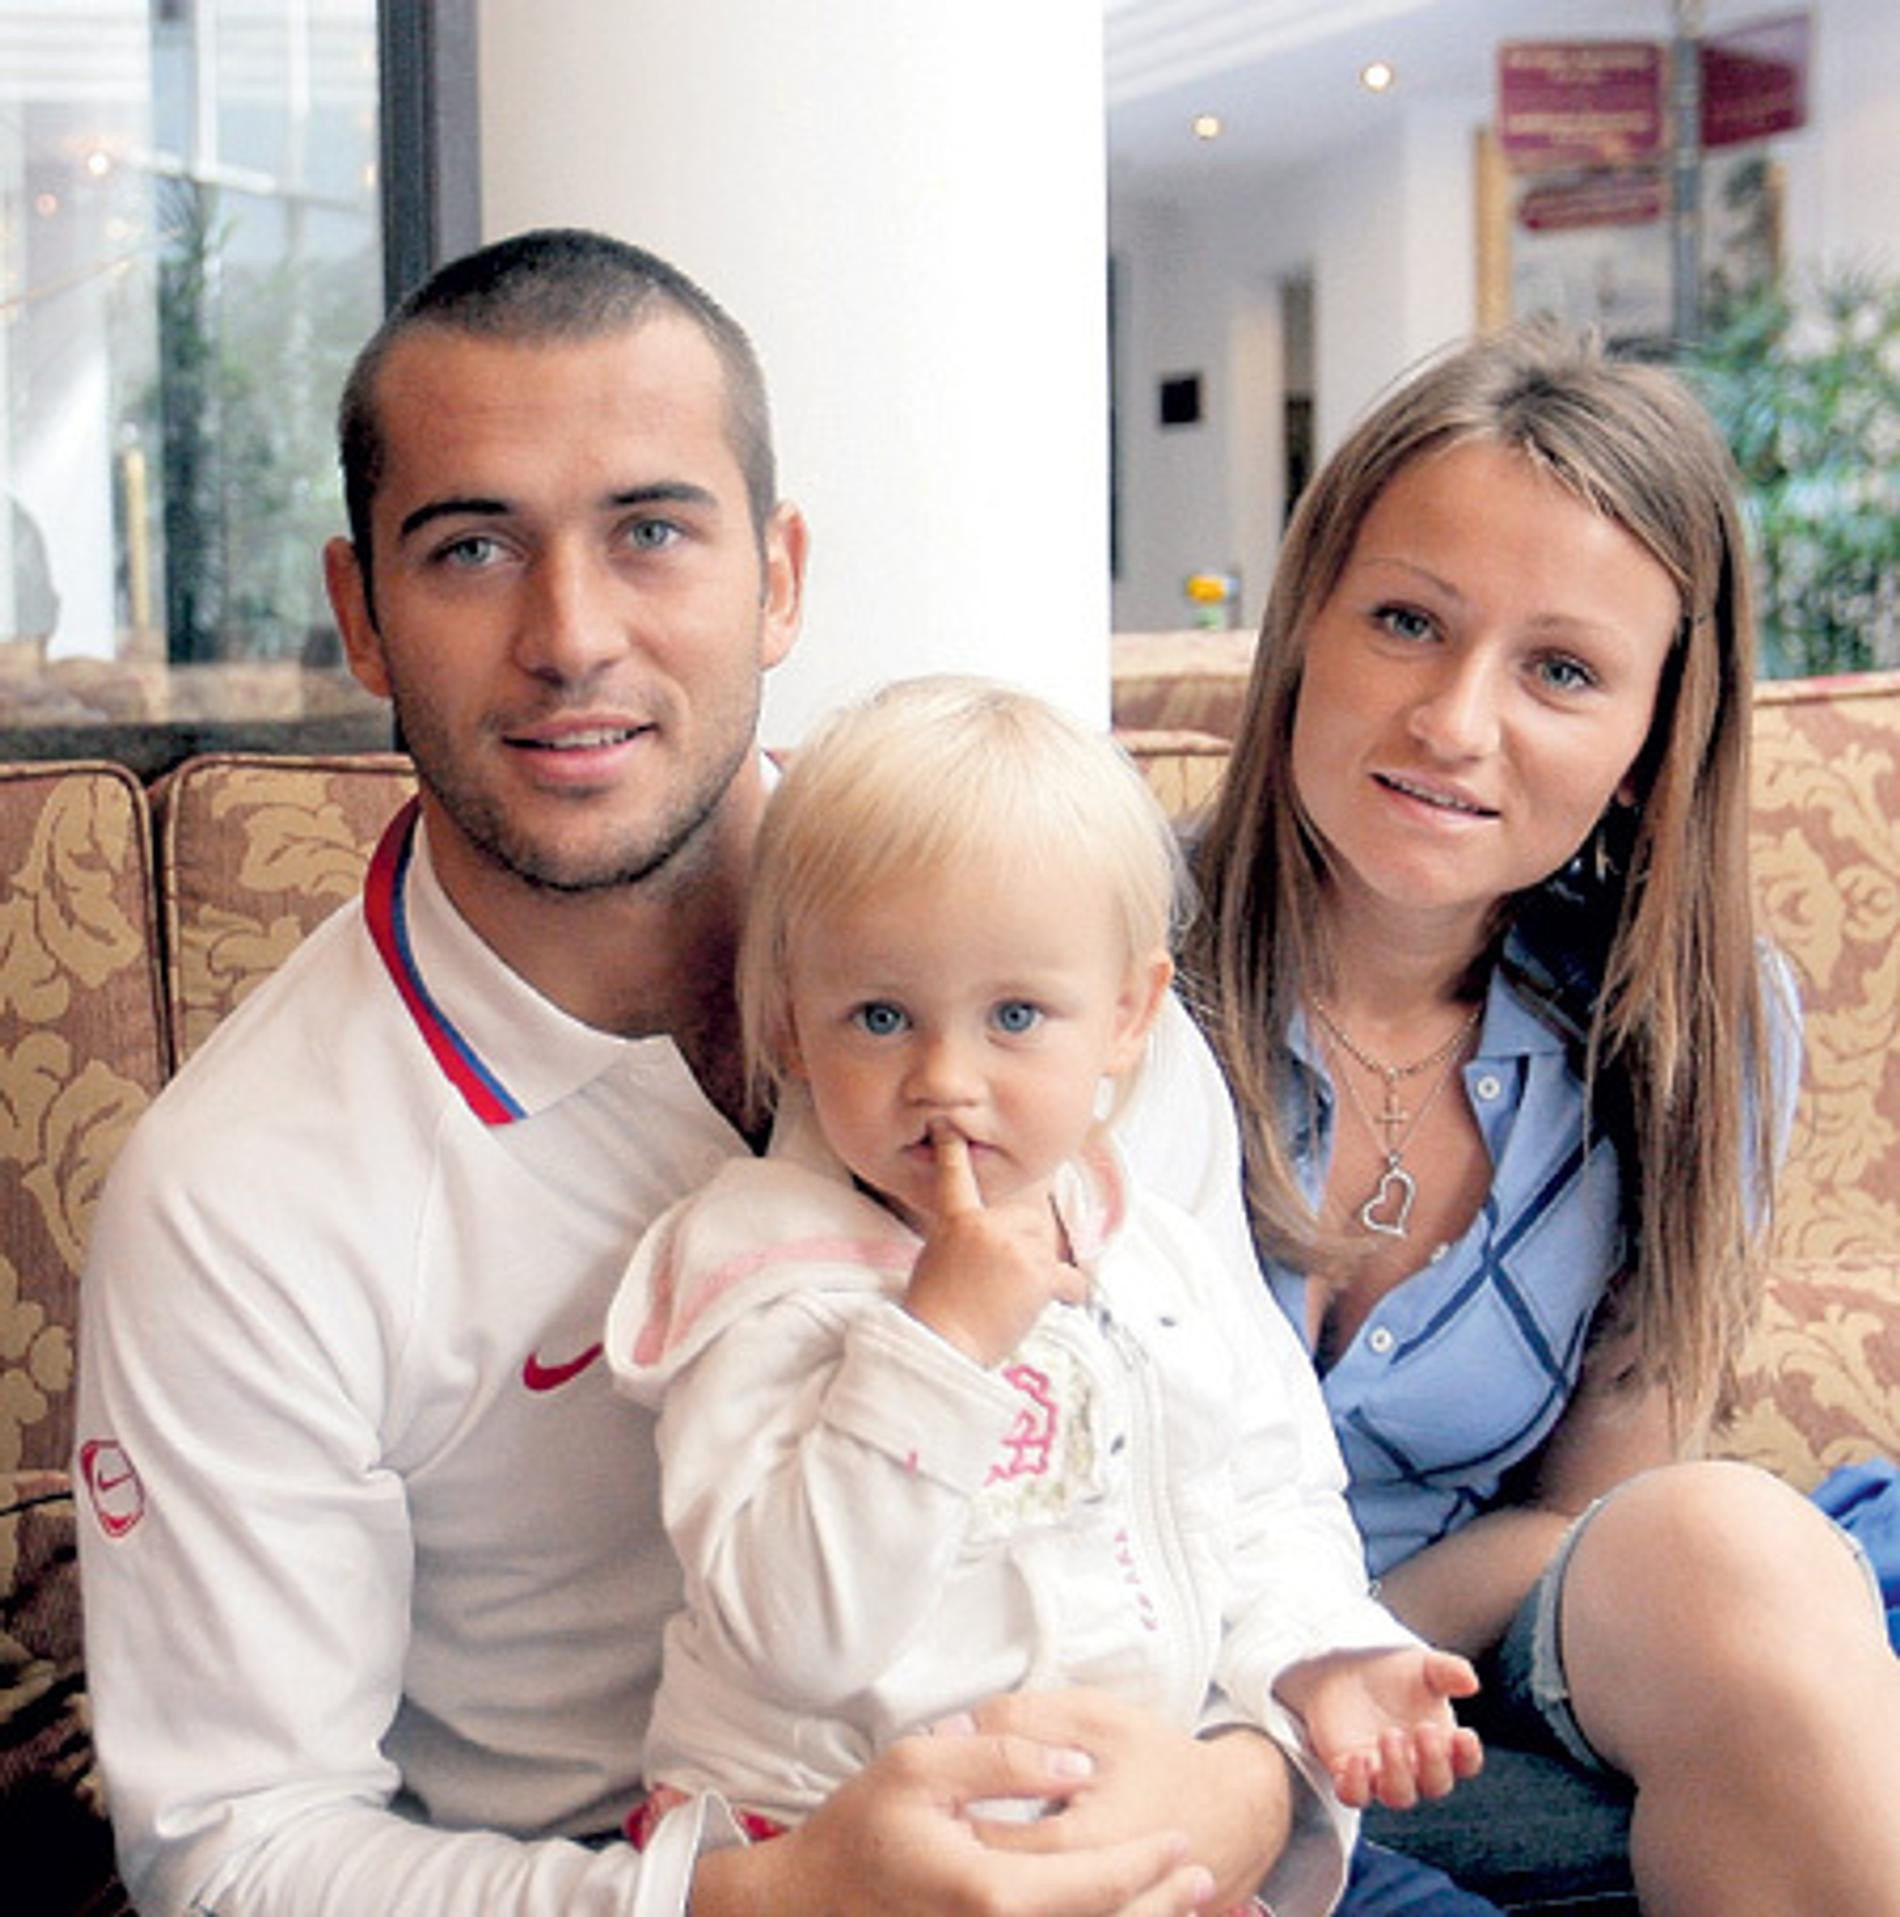 Александр Кержаков и Мария Голова с дочерью Дарьей
Фото: Life